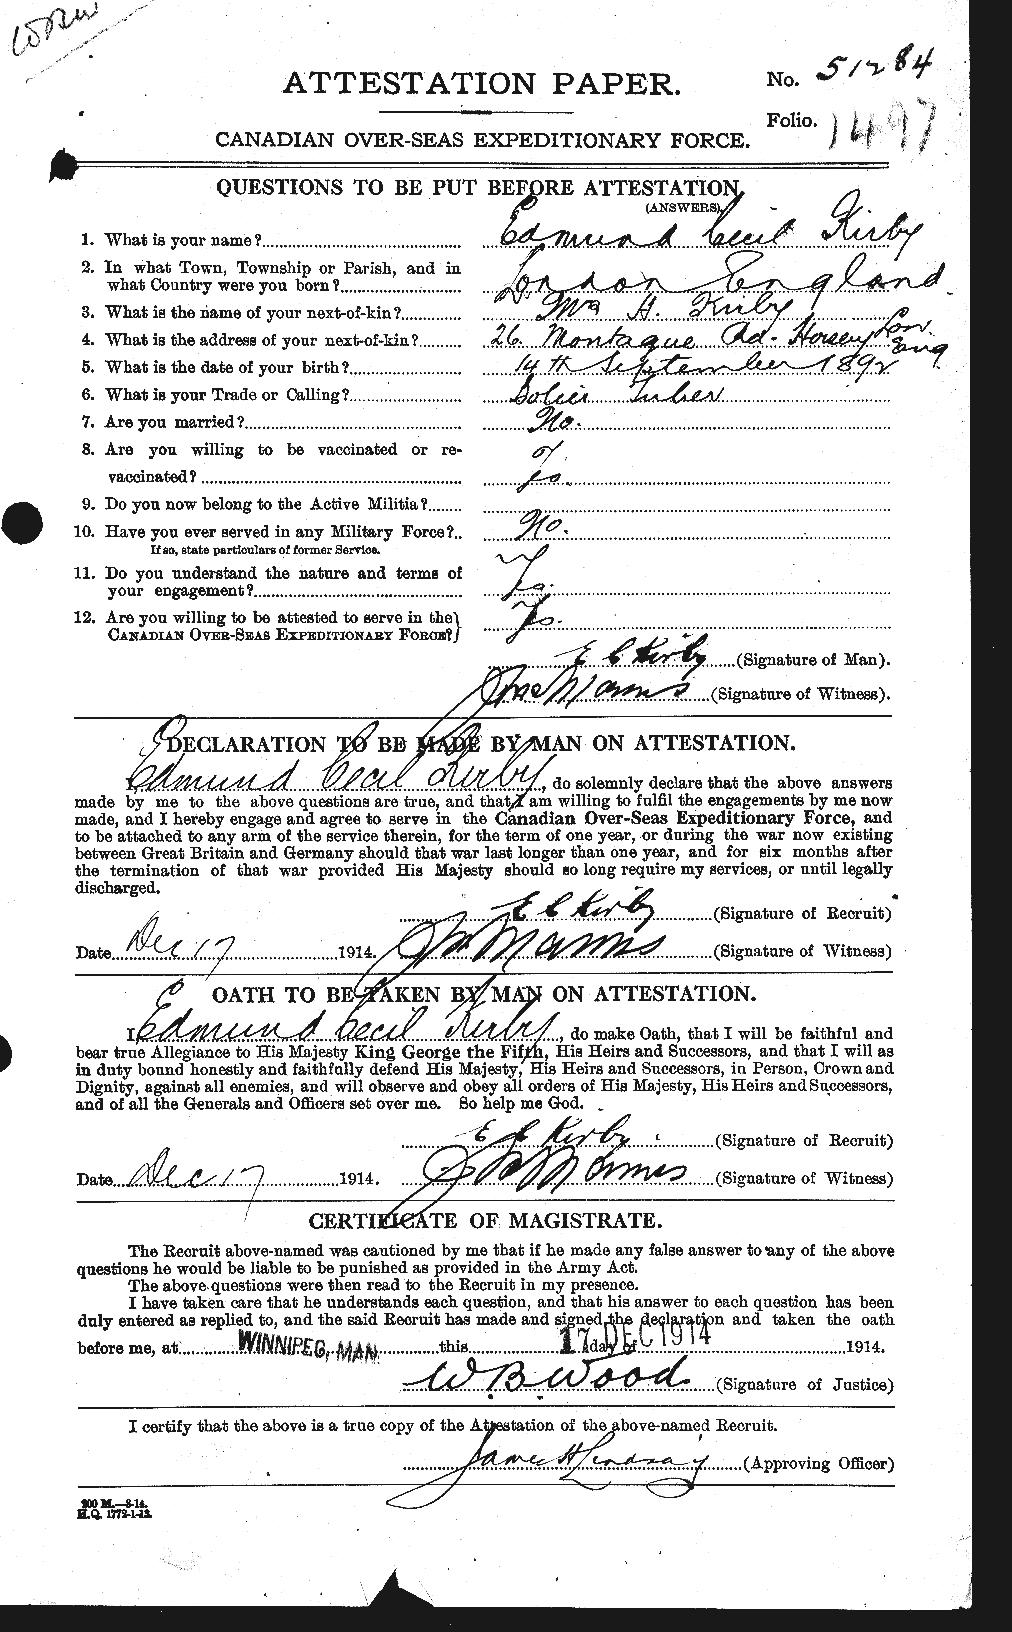 Dossiers du Personnel de la Première Guerre mondiale - CEC 437177a